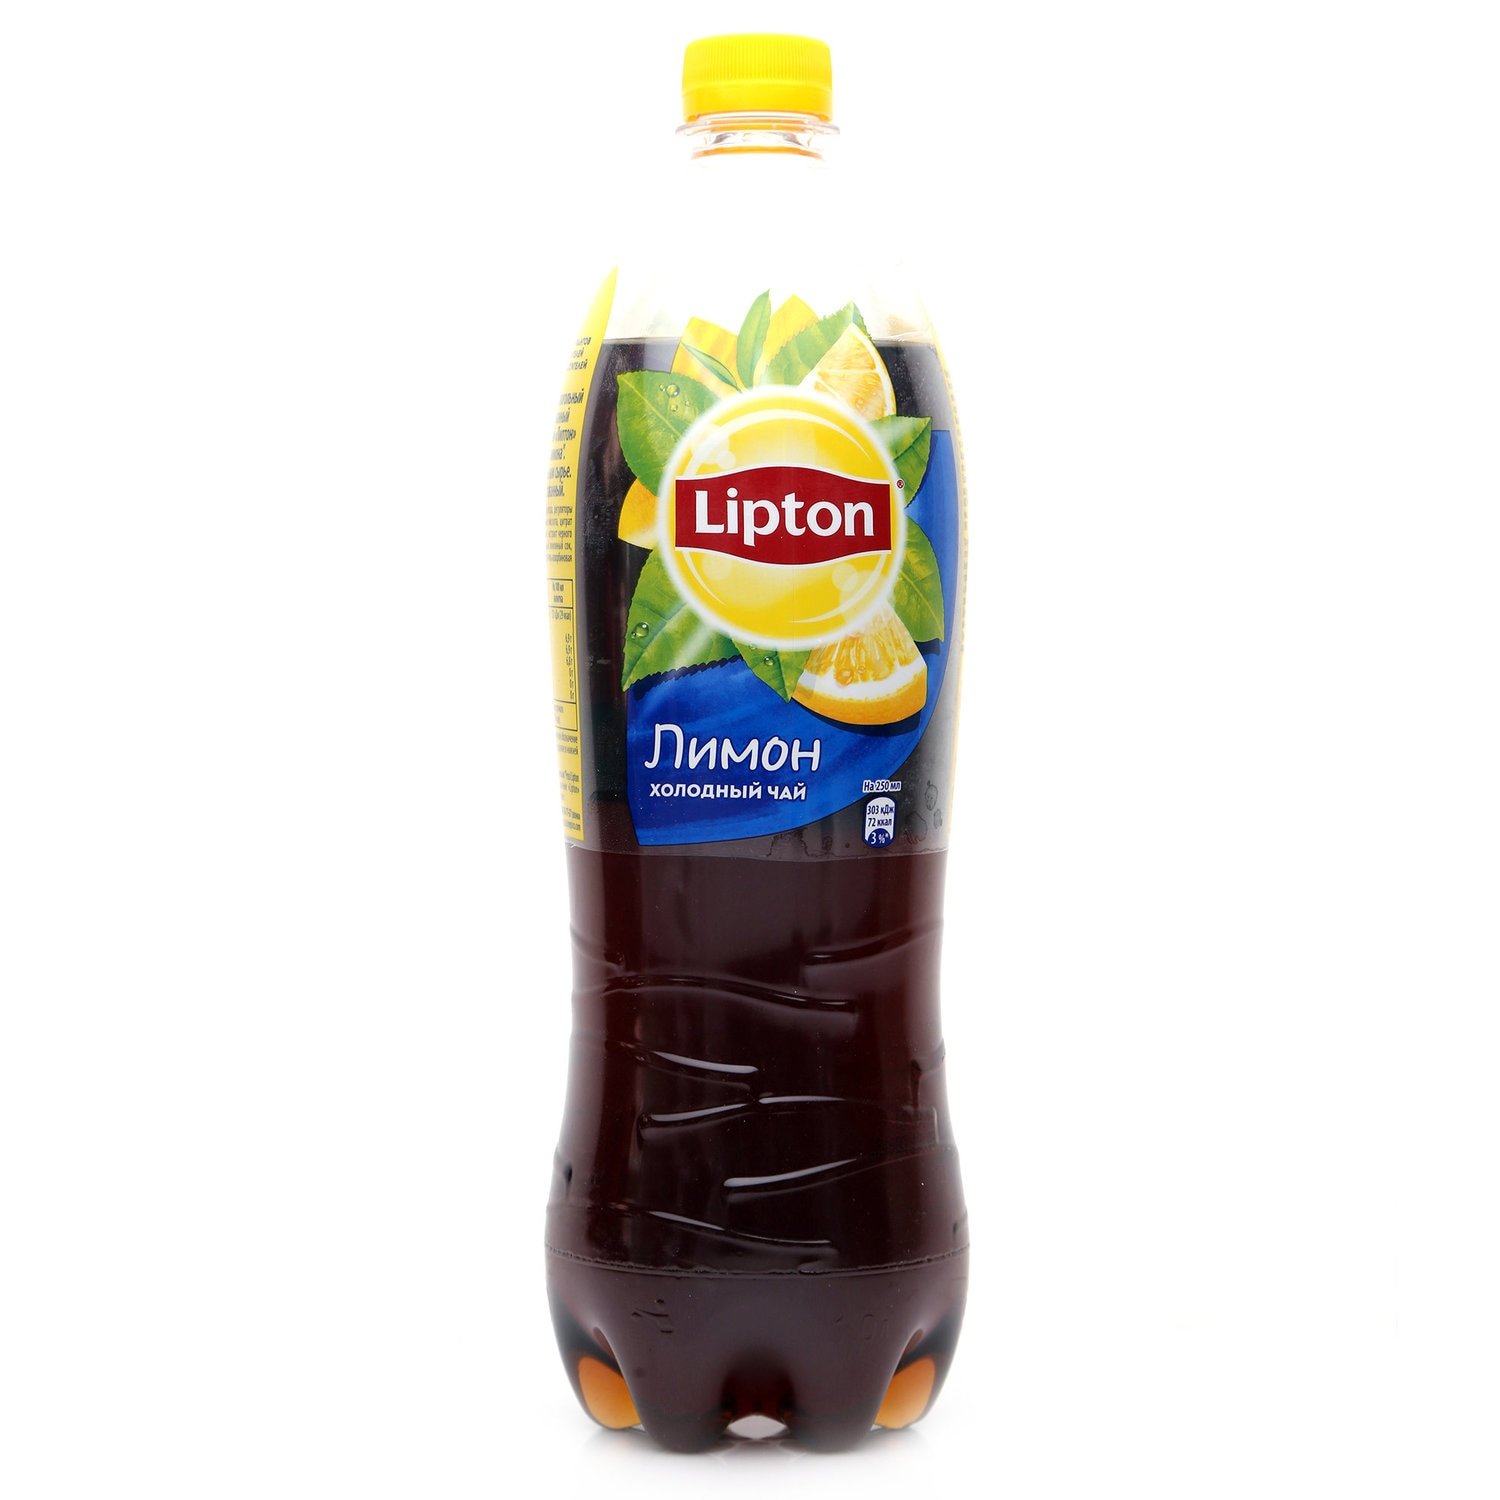 Картинки липтона. Липтон лимон 1л. Чай Липтон холодный лимон 1л. Липтон лимон 1 литр. Чай Липтон лимон 1л.